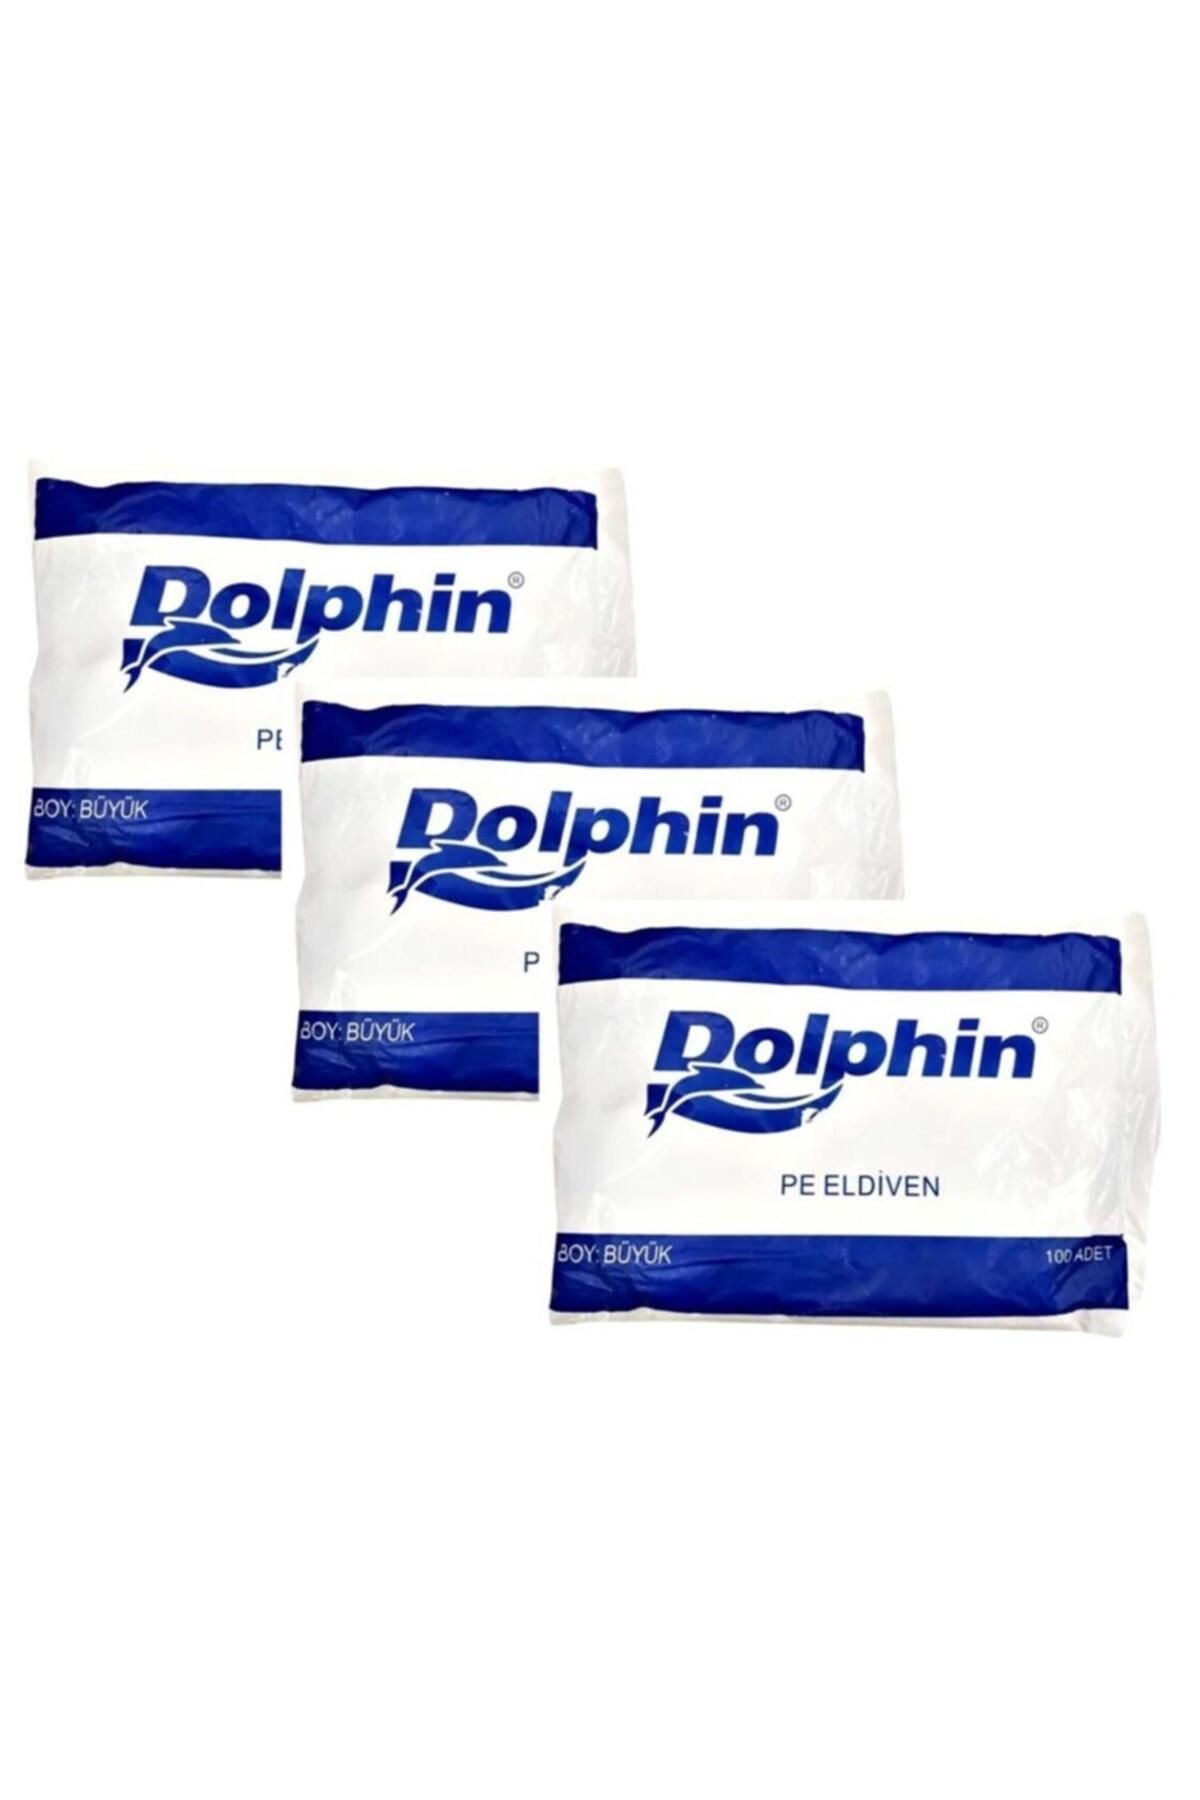 Dolphin Pe Iş Temizlik Tek Kullanımlık Şeffaf Poşet Market Eldiven / Büyük Boy / 100 Adetlik 3 Paket